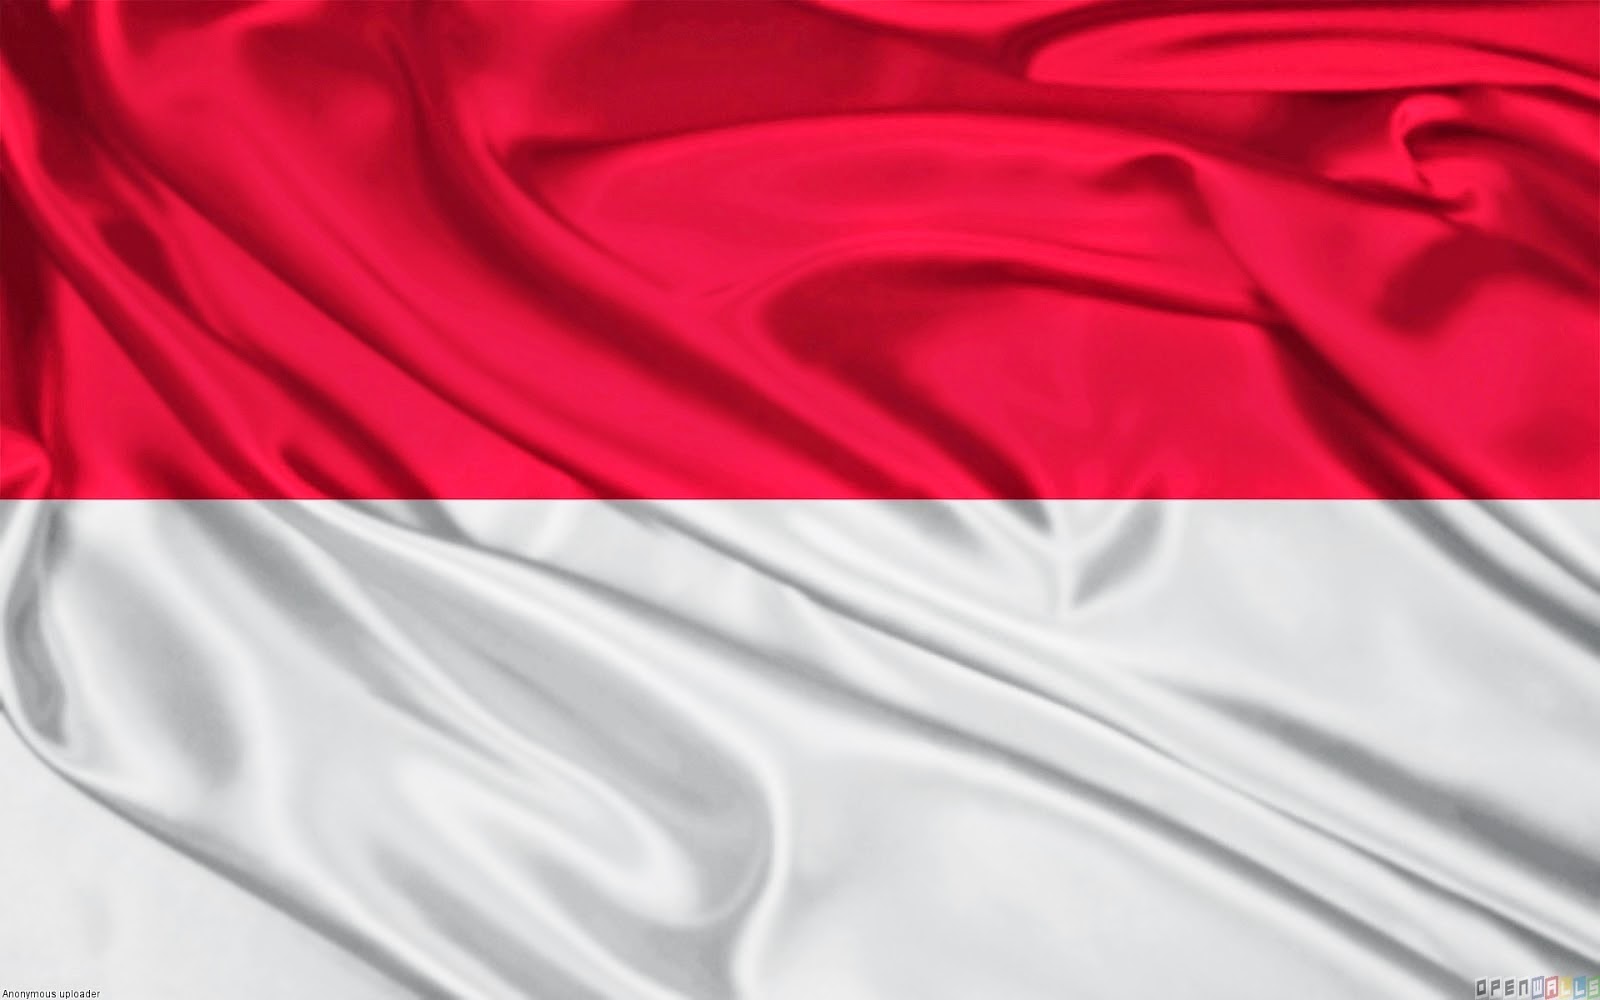 carta da parati bendera indonesia,seta,rosso,raso,rosa,tessile